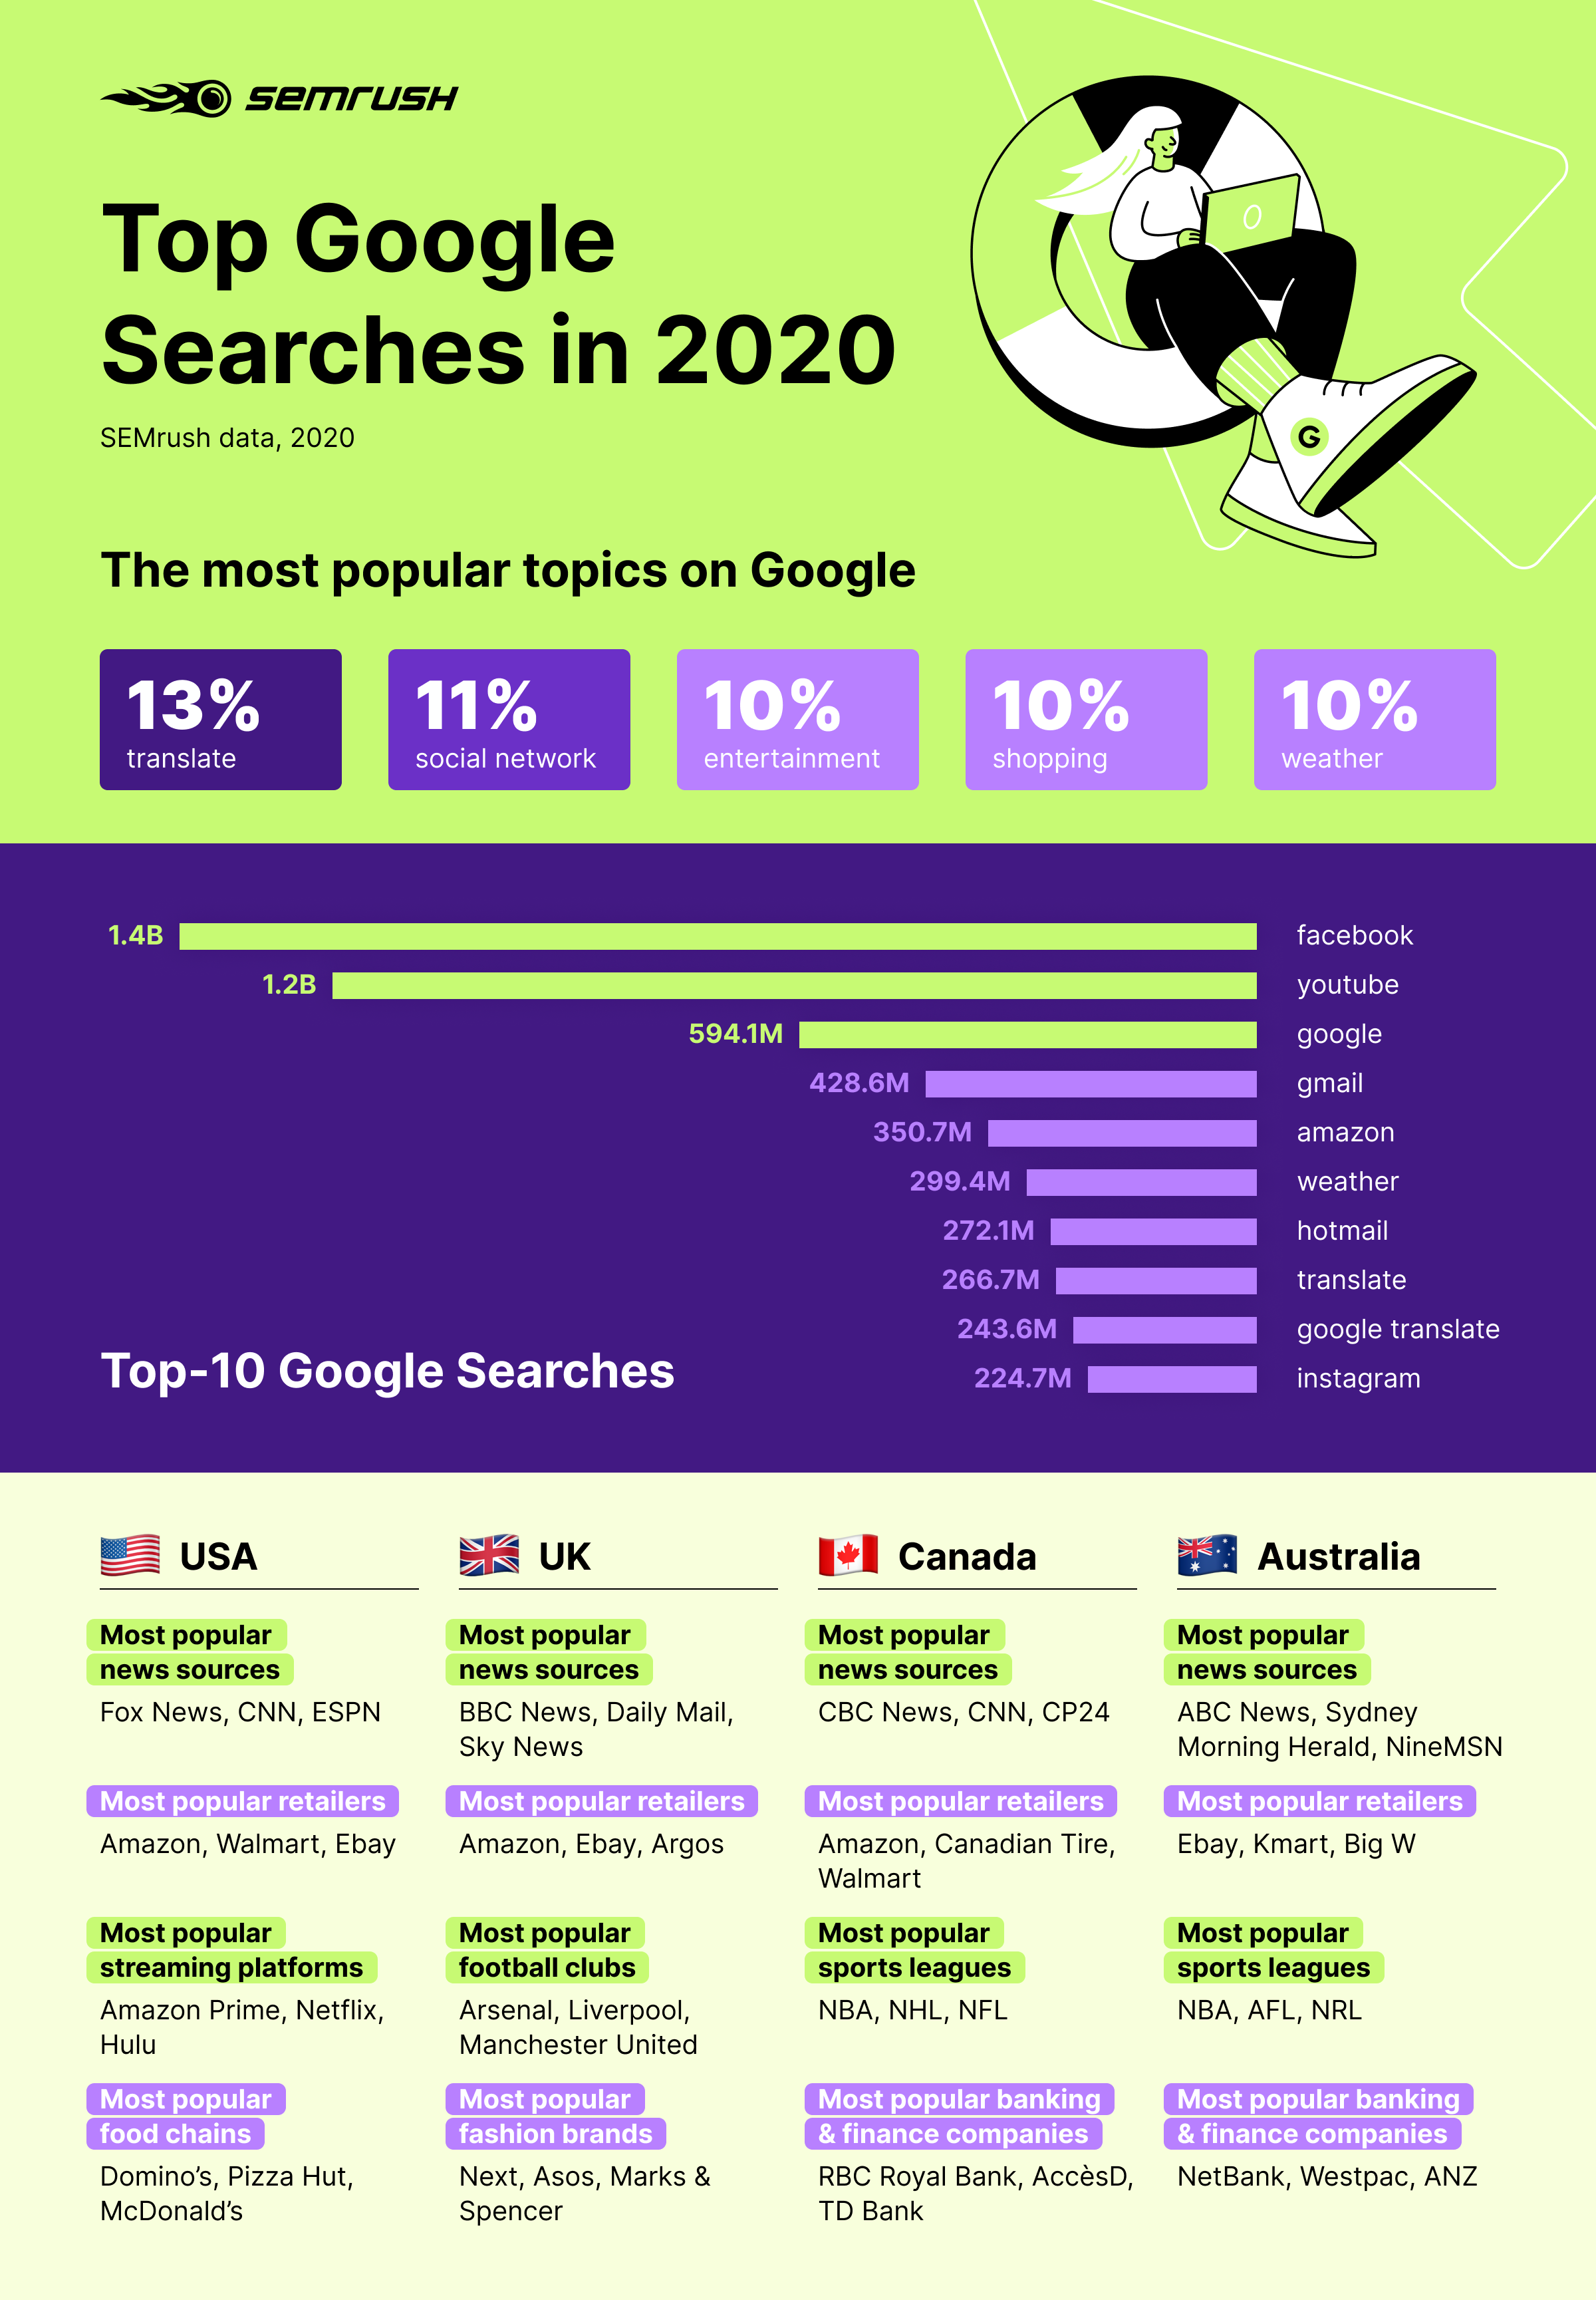 Top Google searches study by SEMrush: key takeaways